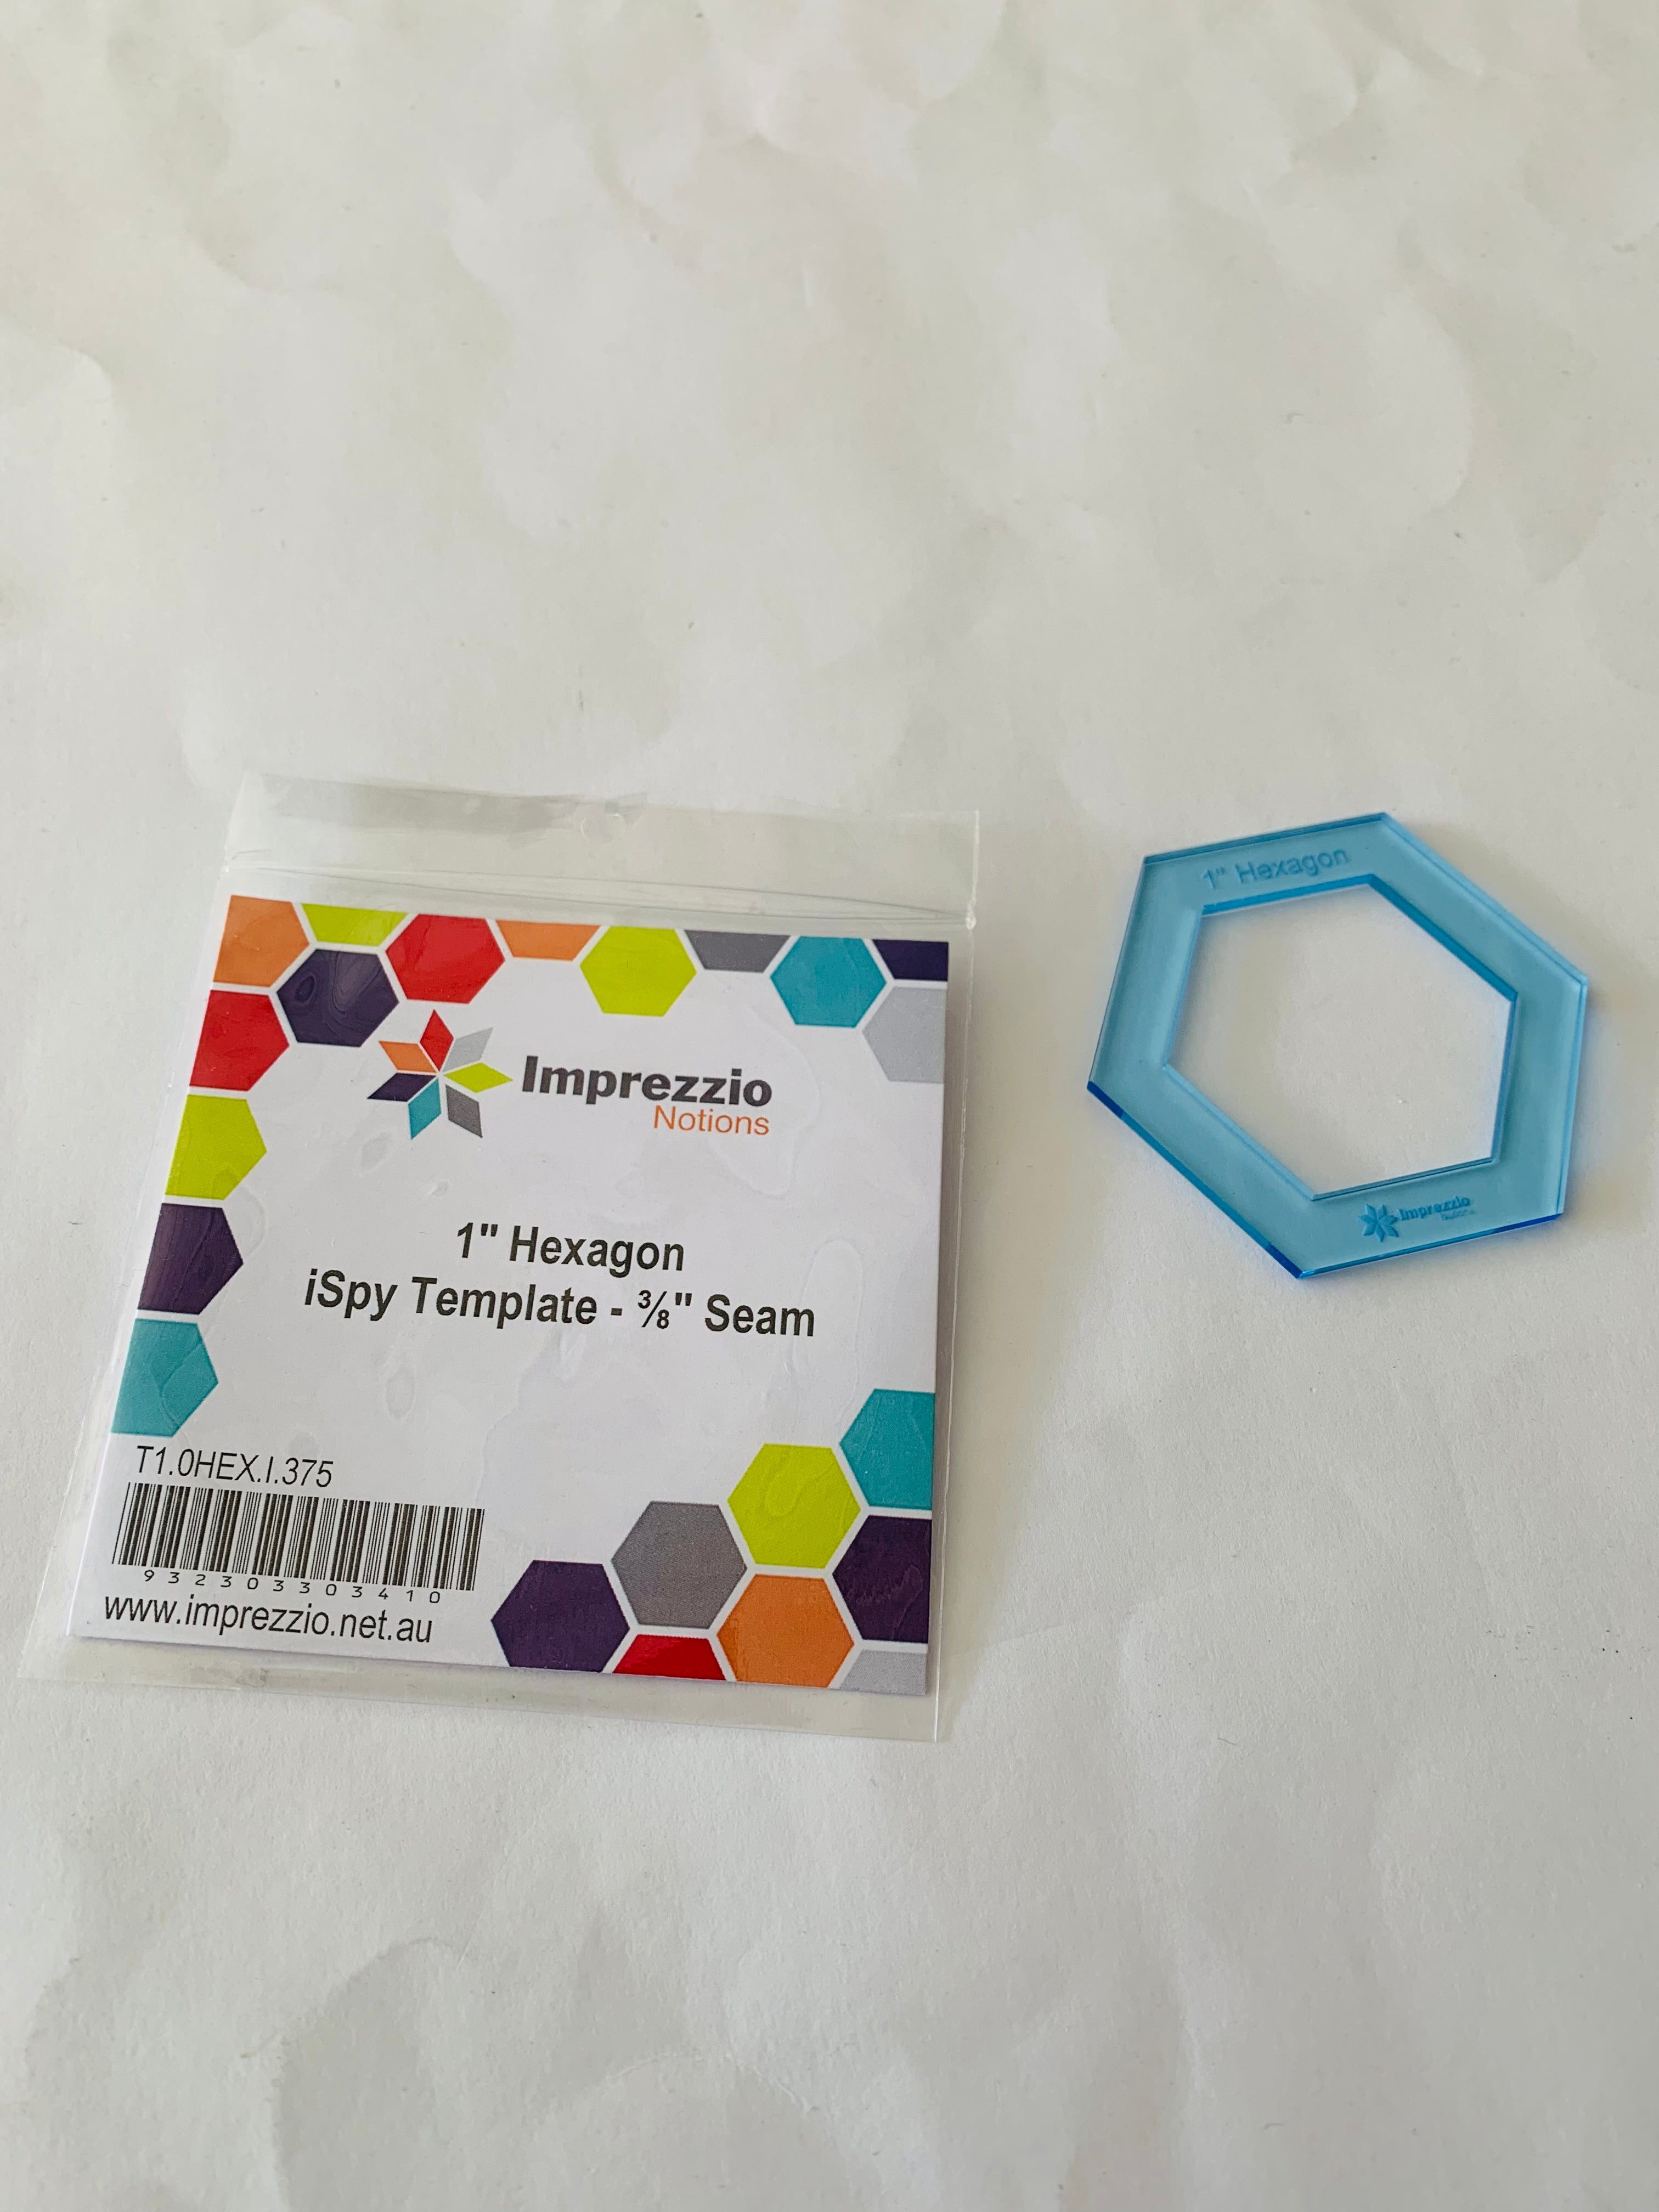 Imprezzio 1” Hexagon iSpy Template: 3/8” seam